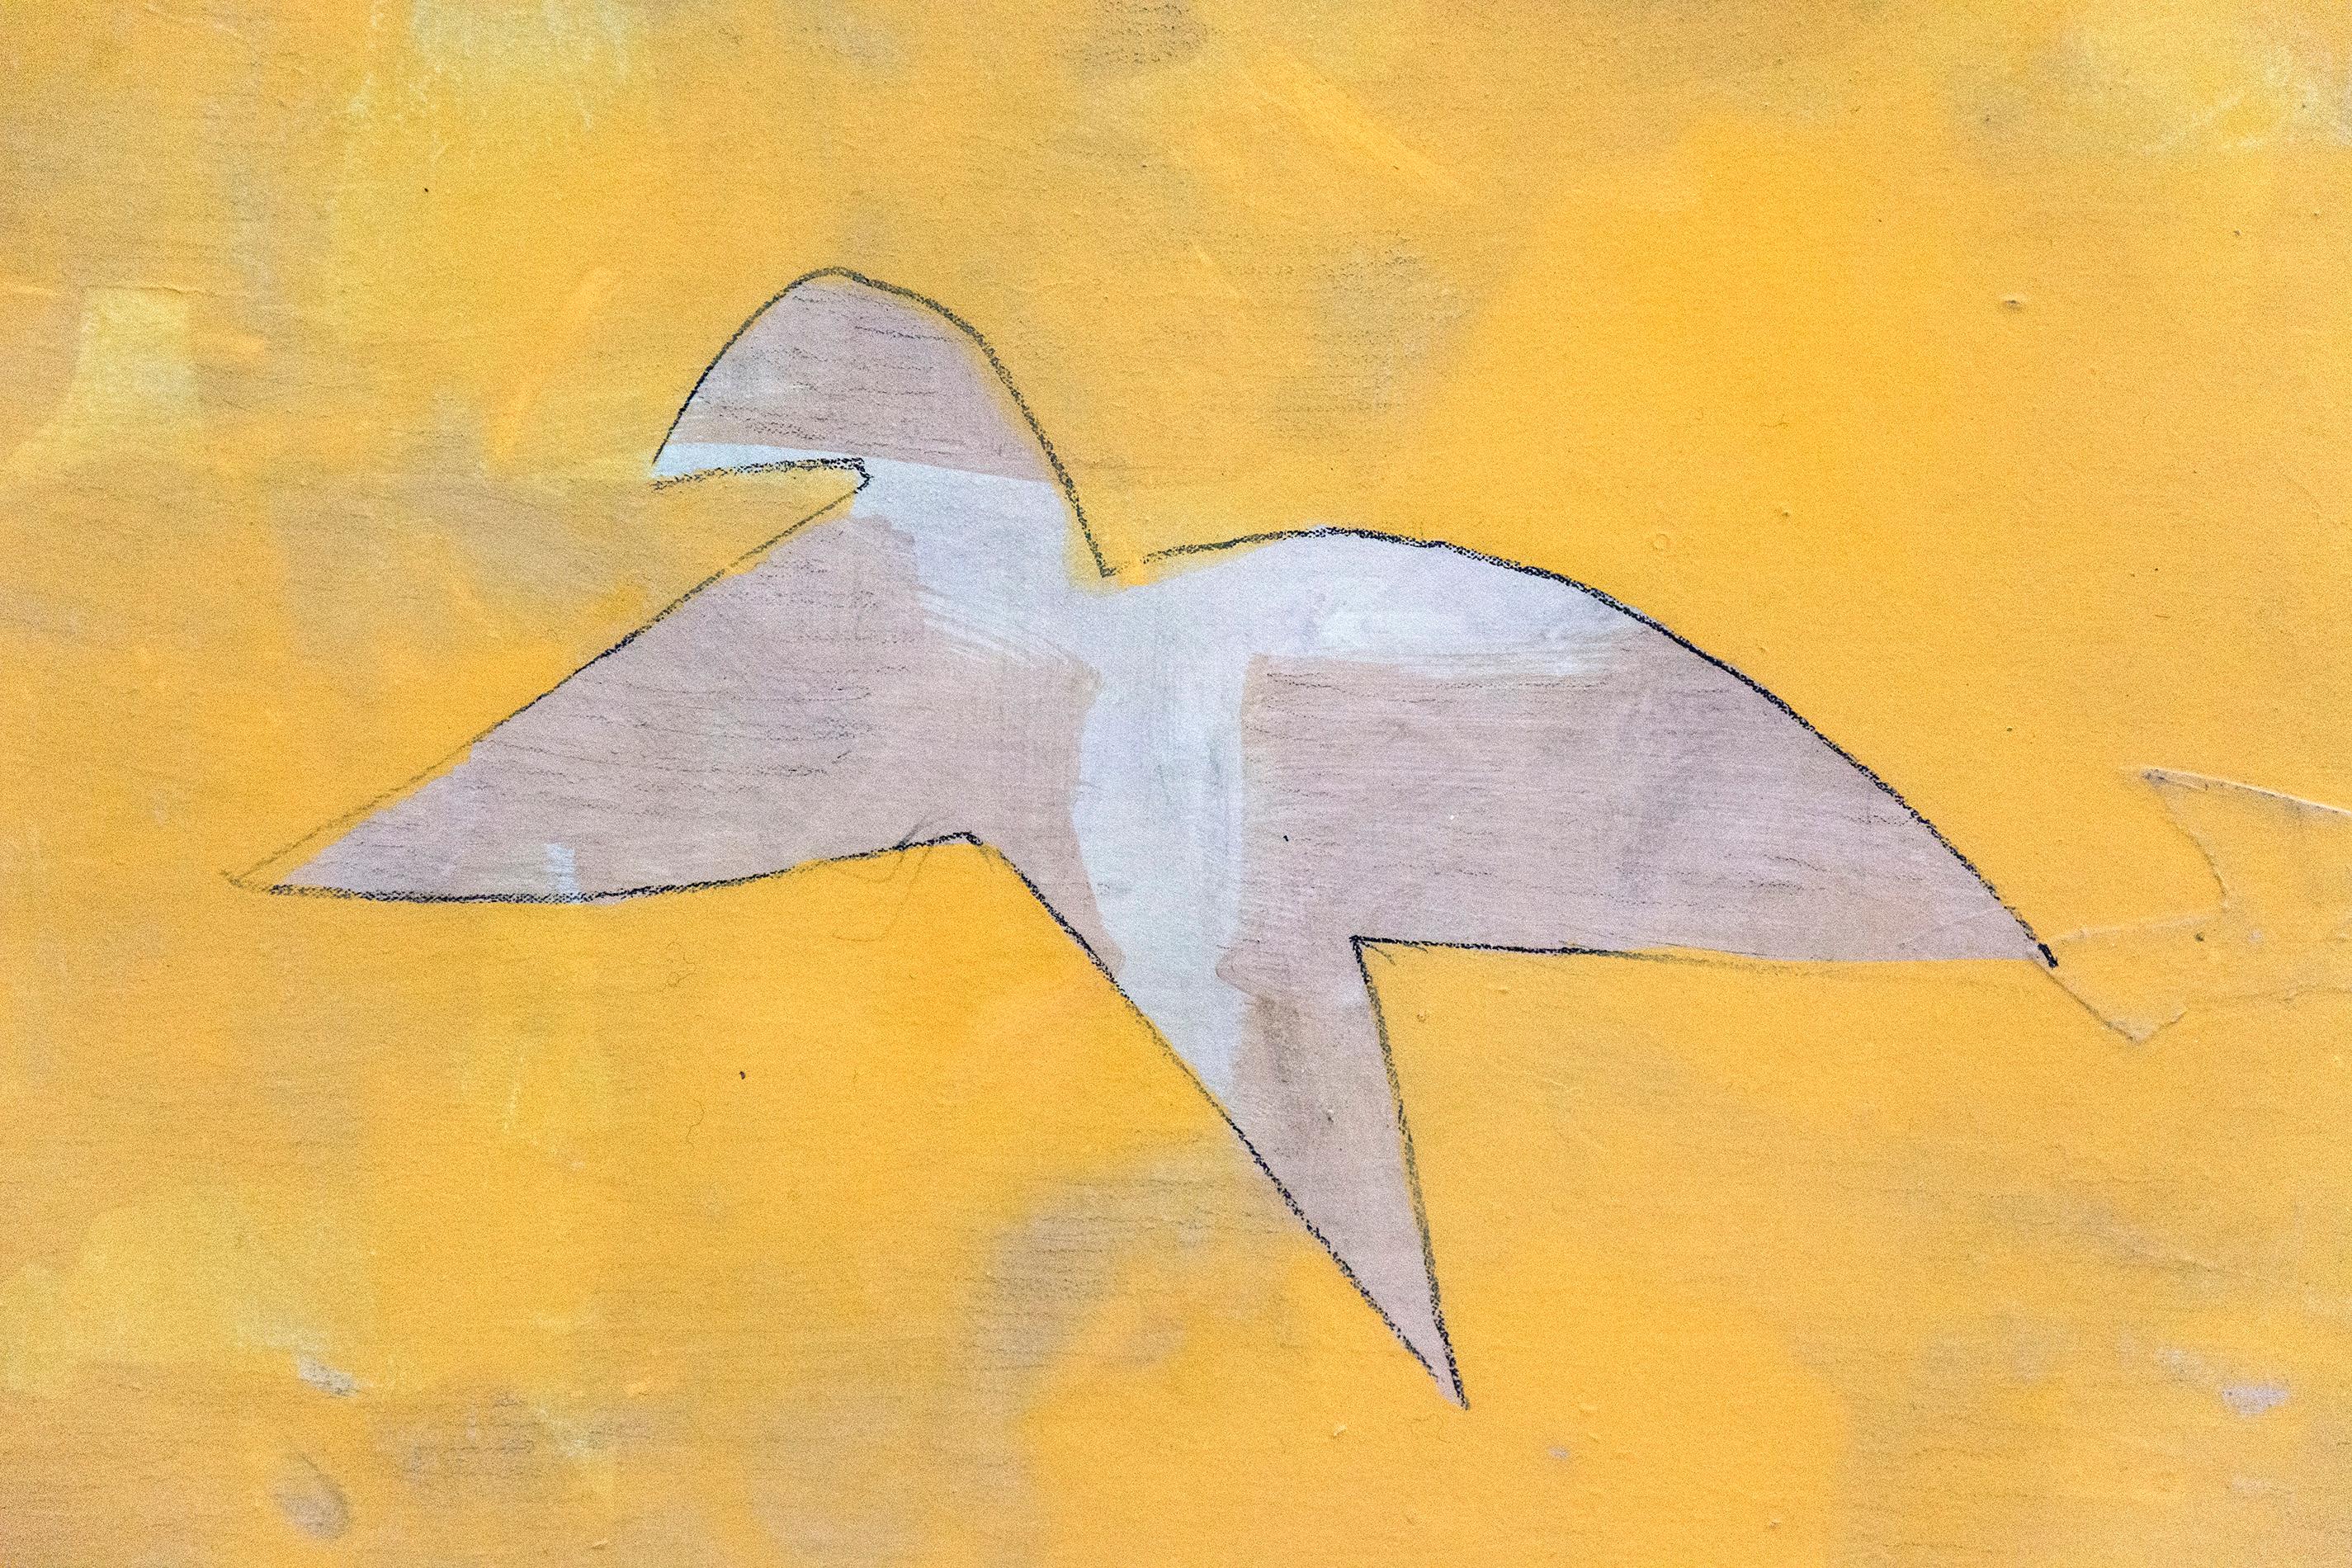 Zwei Vögel kreuzen einen sonnengelben Himmel in dieser inspirierten Komposition von Otto Donald Rogers. Rogers Werke, die in einer kubistisch-konstruktivistischen Tradition wurzeln, erforschen die Themen Bewegung in der Stille, Einheit in der